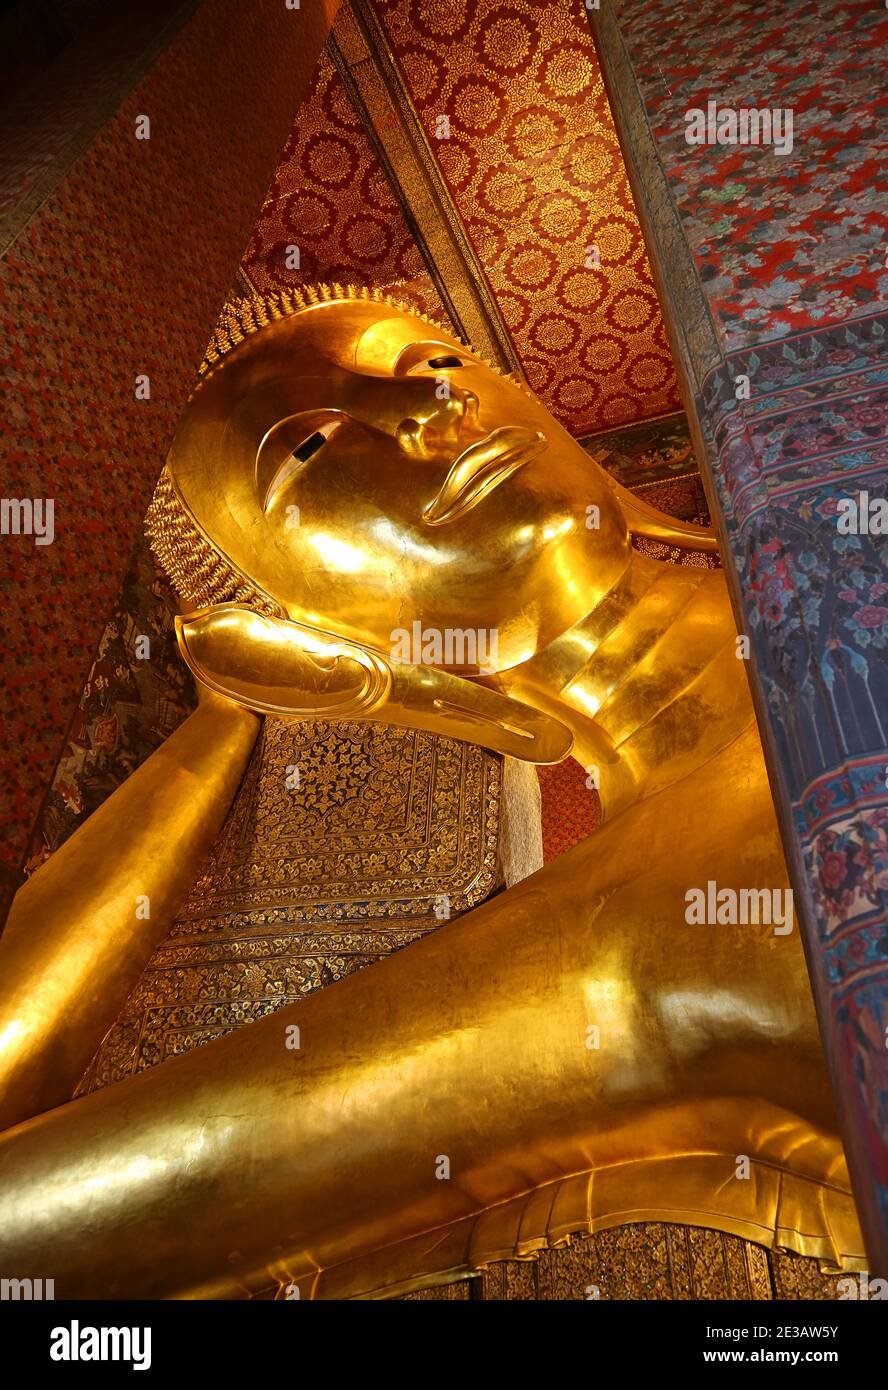 15 mètres de haut gigantesque Bouddha inclinable image du complexe du Temple Wat Pho situé dans le district de Phra Nakhon, Bangkok, Thaïlande Banque D'Images